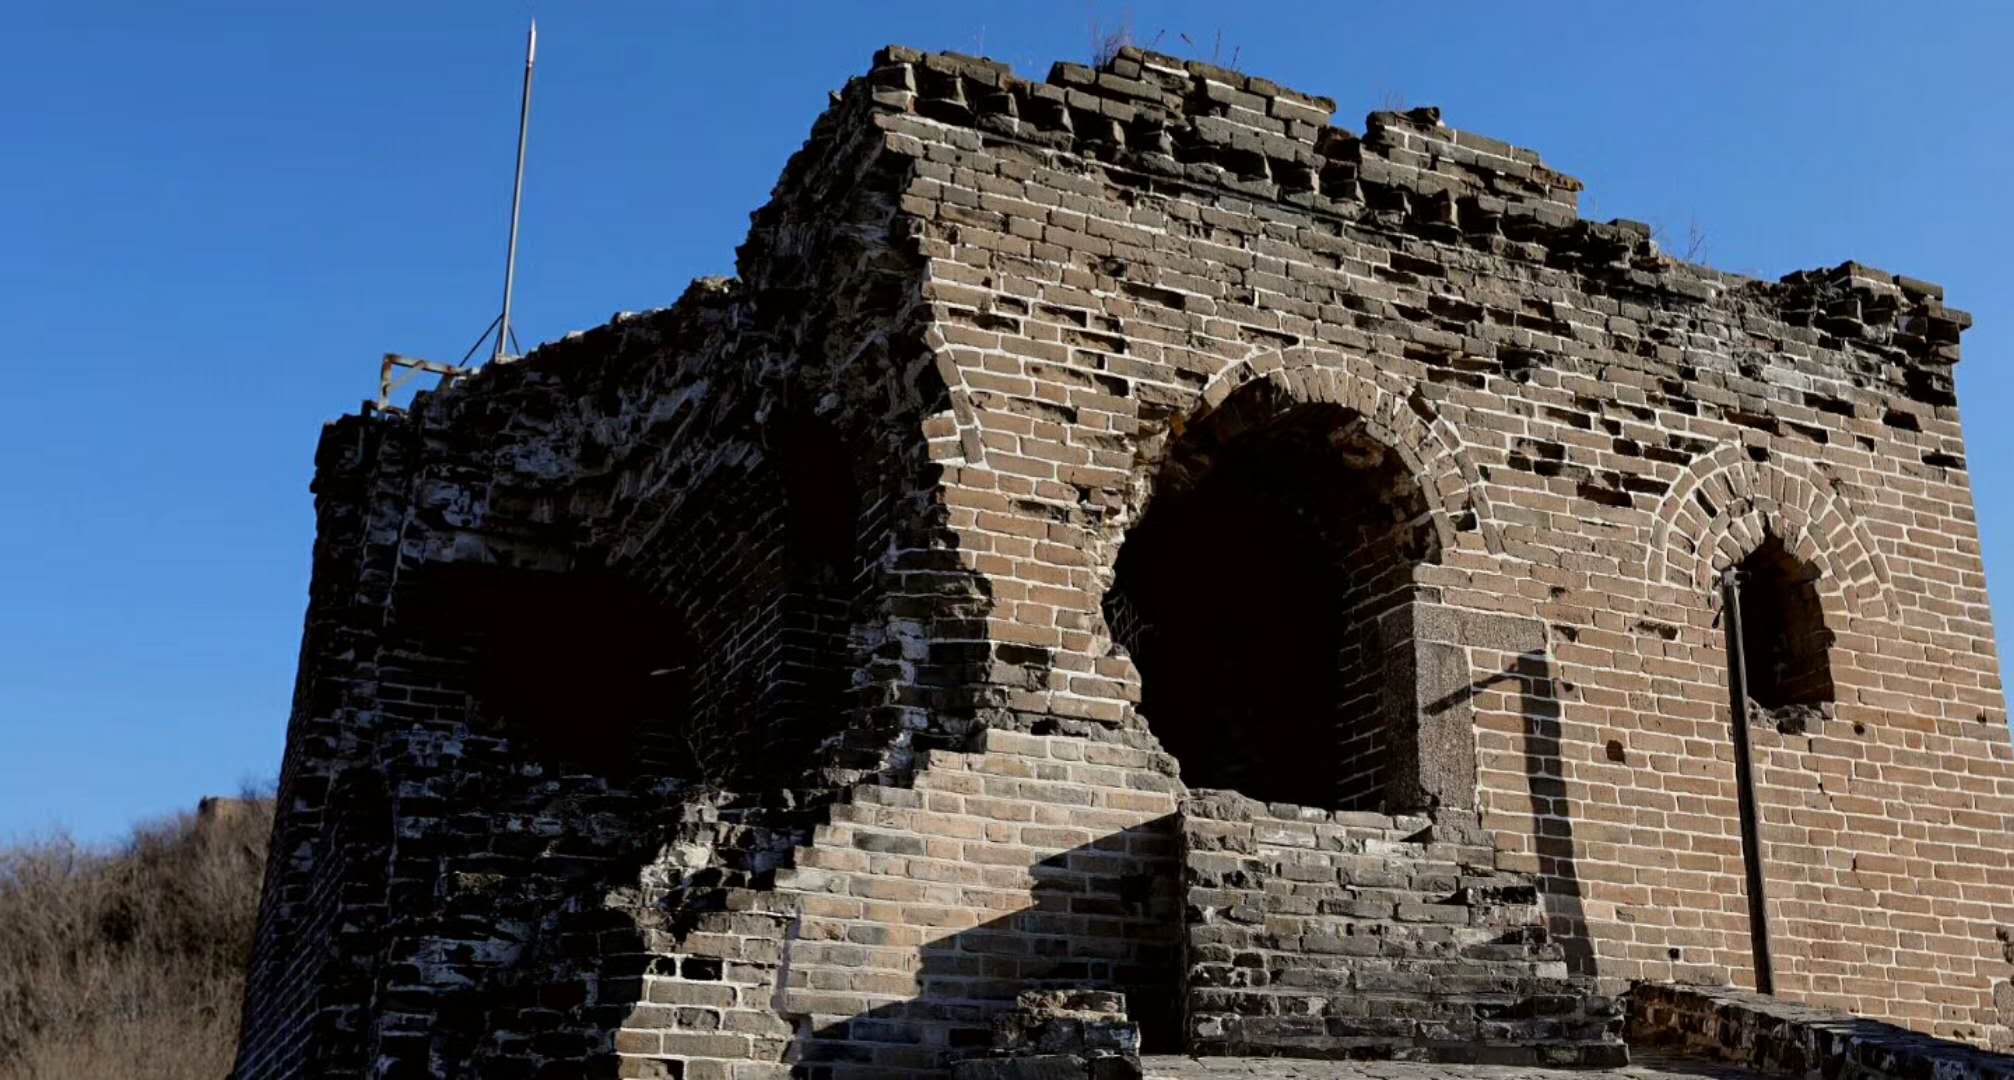 simatai great wall ancient watching tower